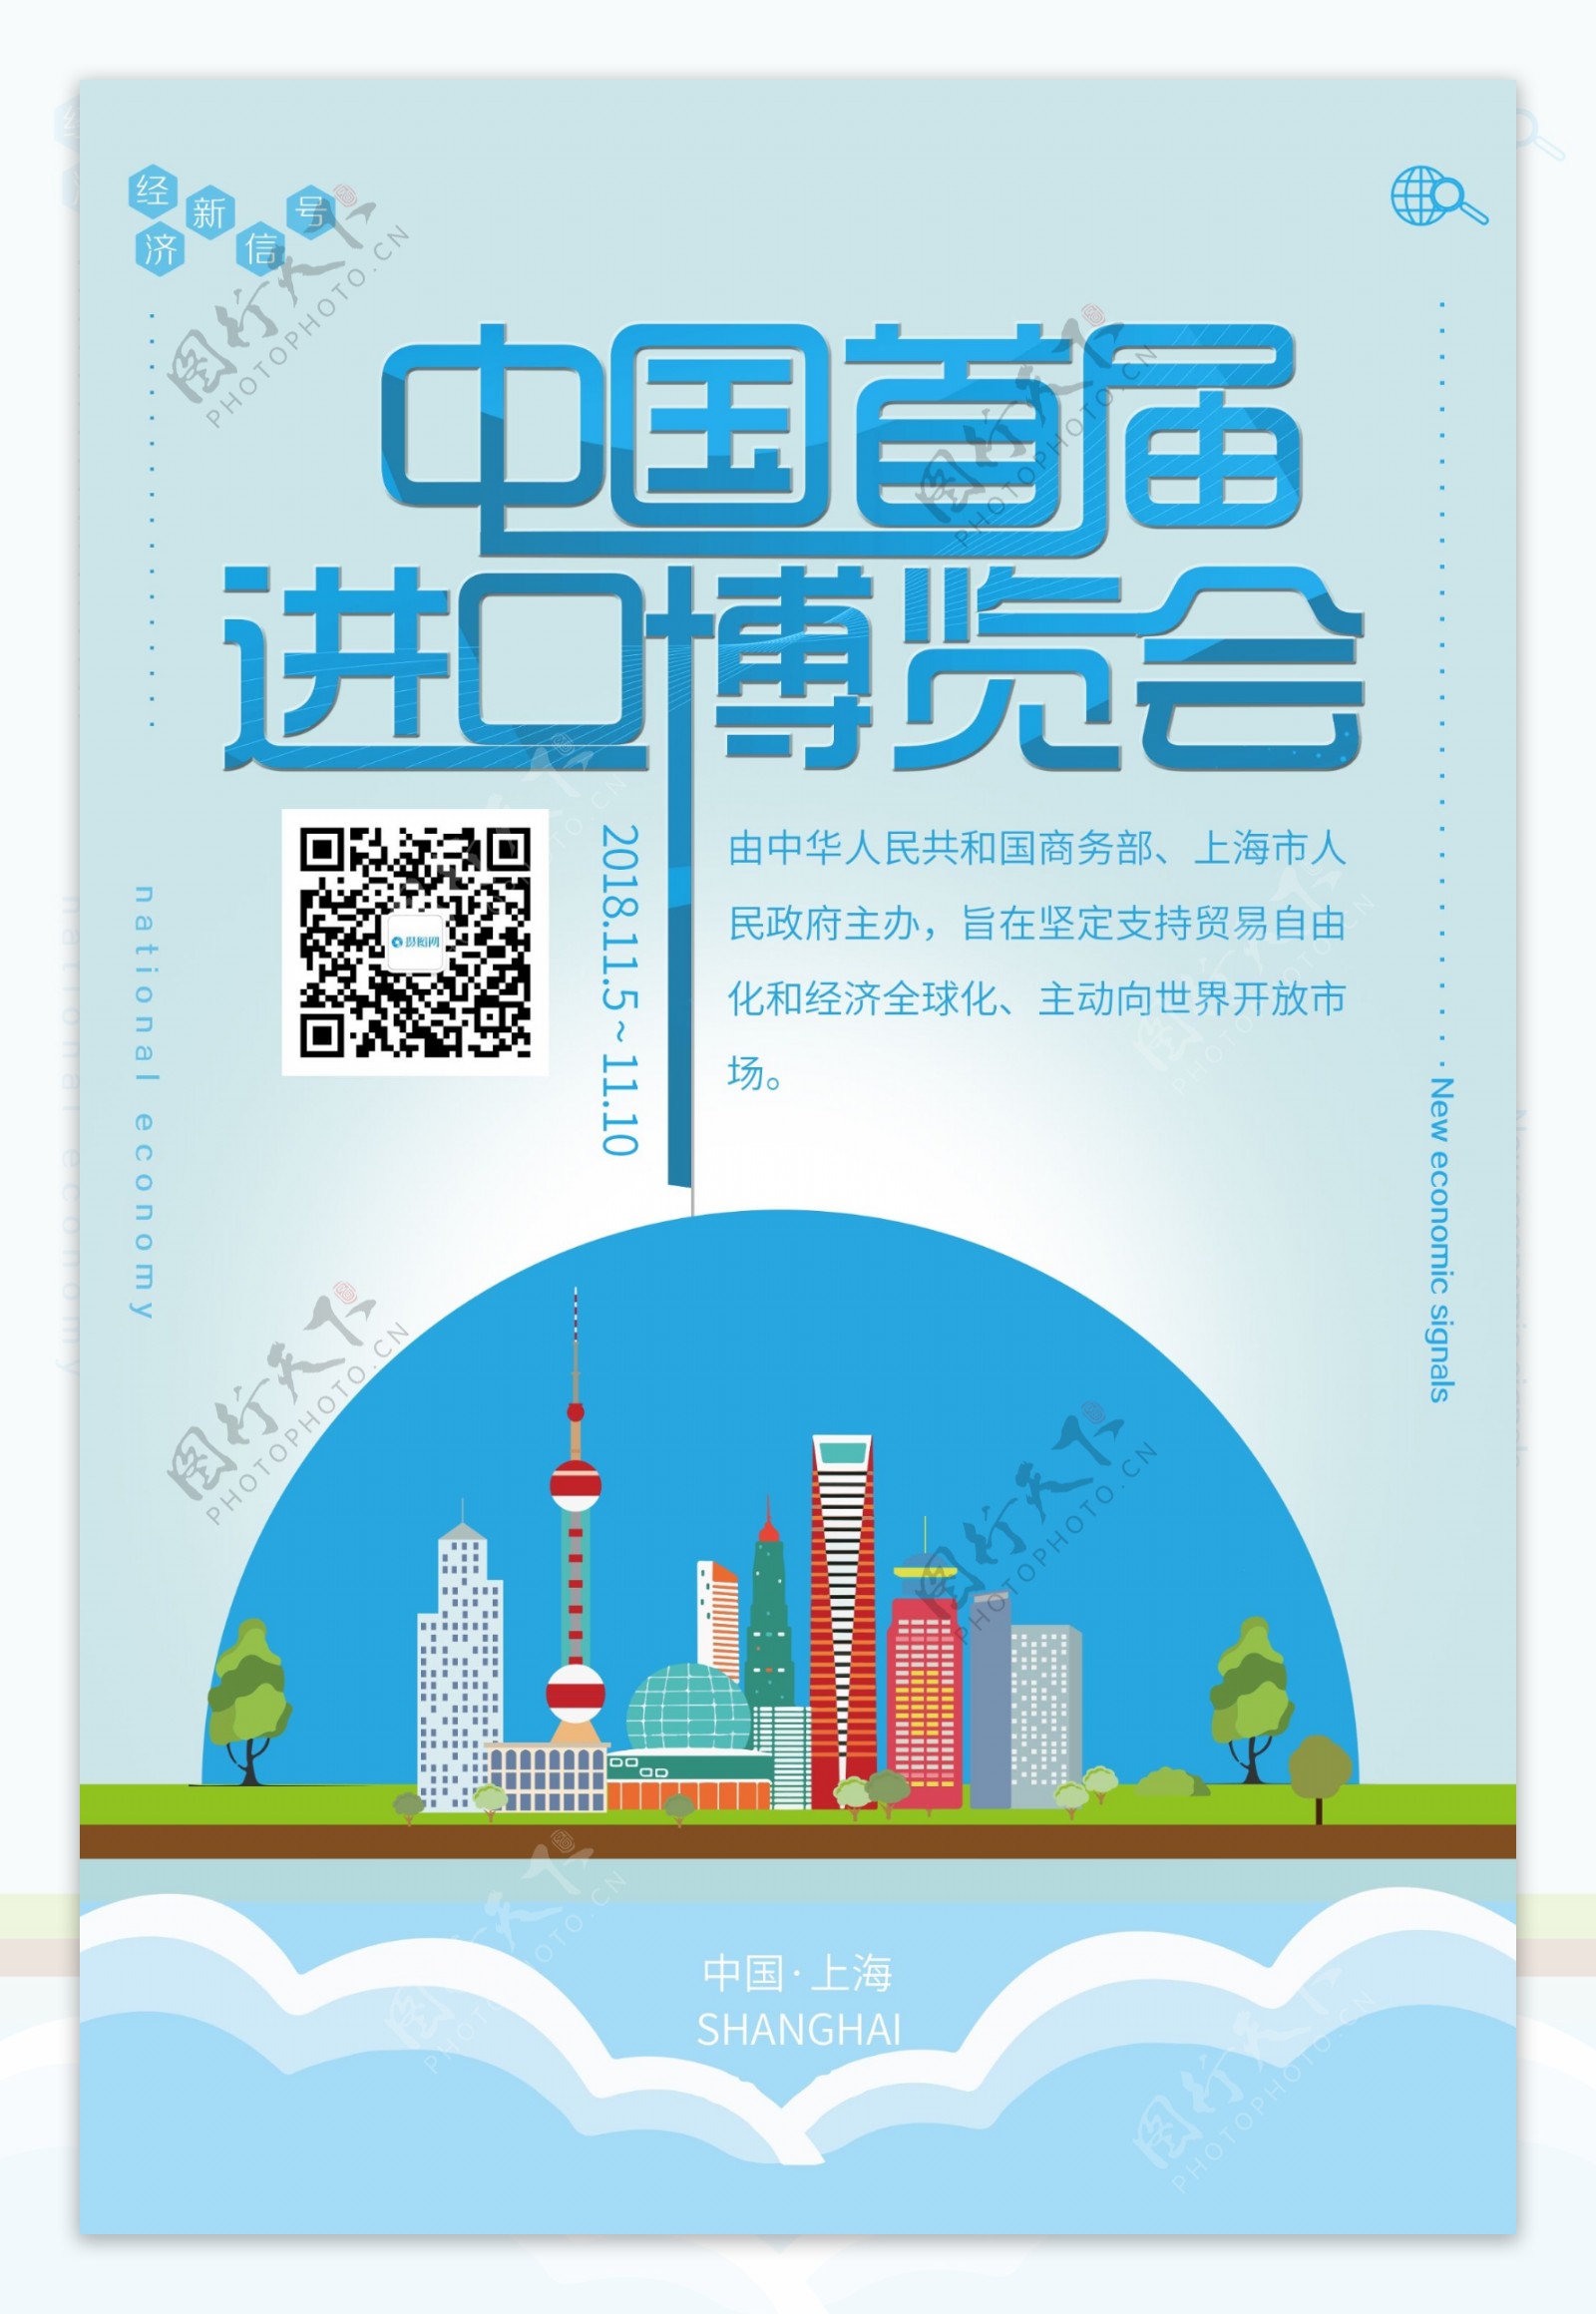 中国首届进口博览会海报